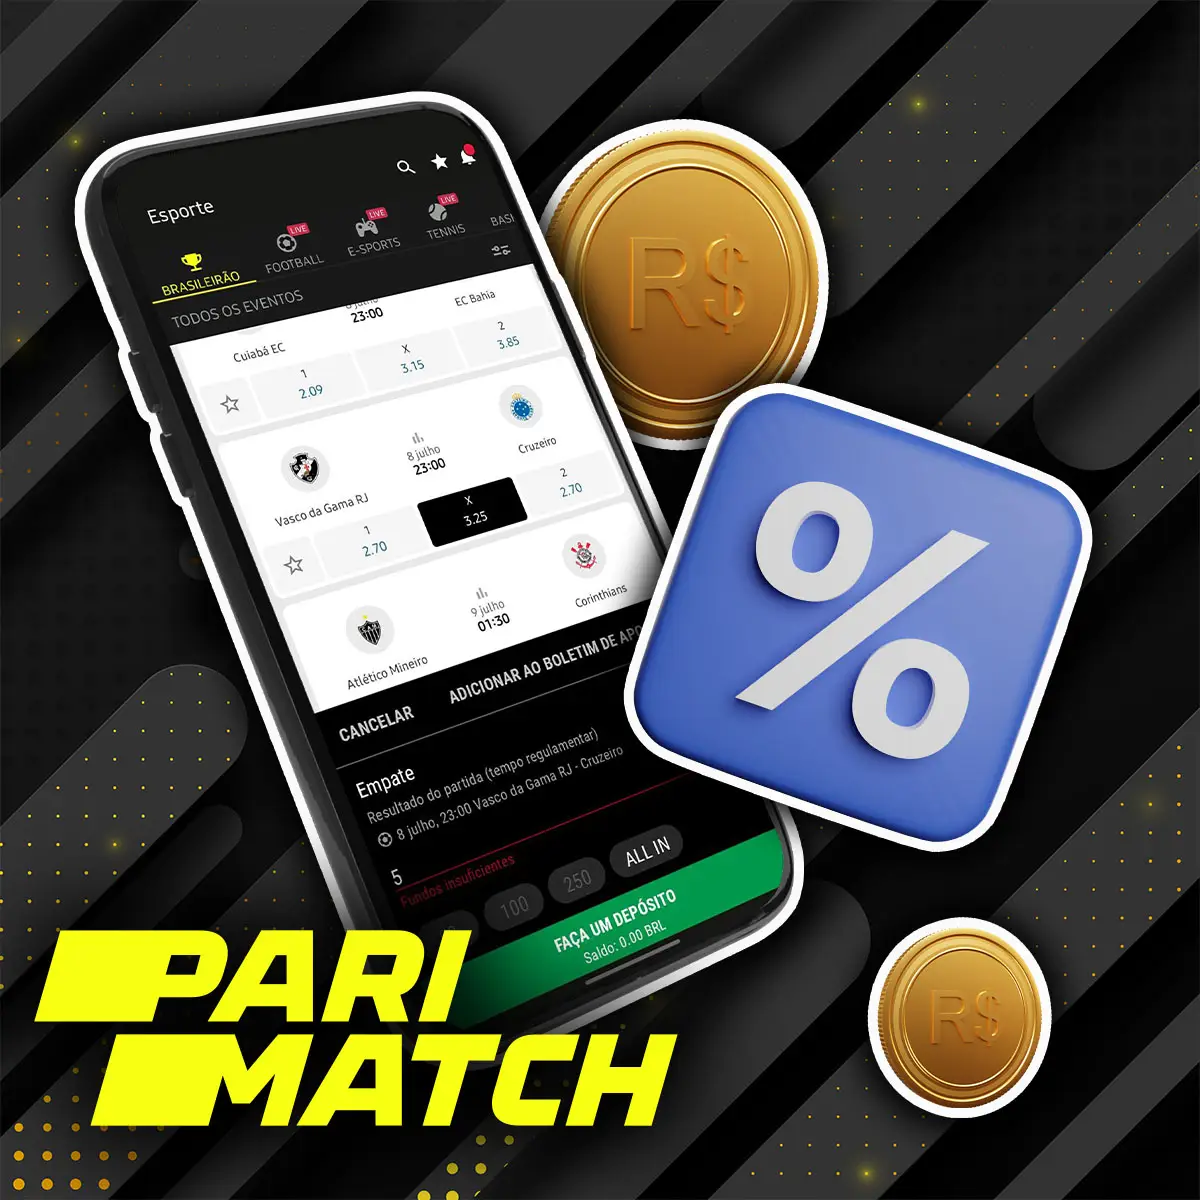 Modelos de faturamento no aplicativo Parimatch no Brasil